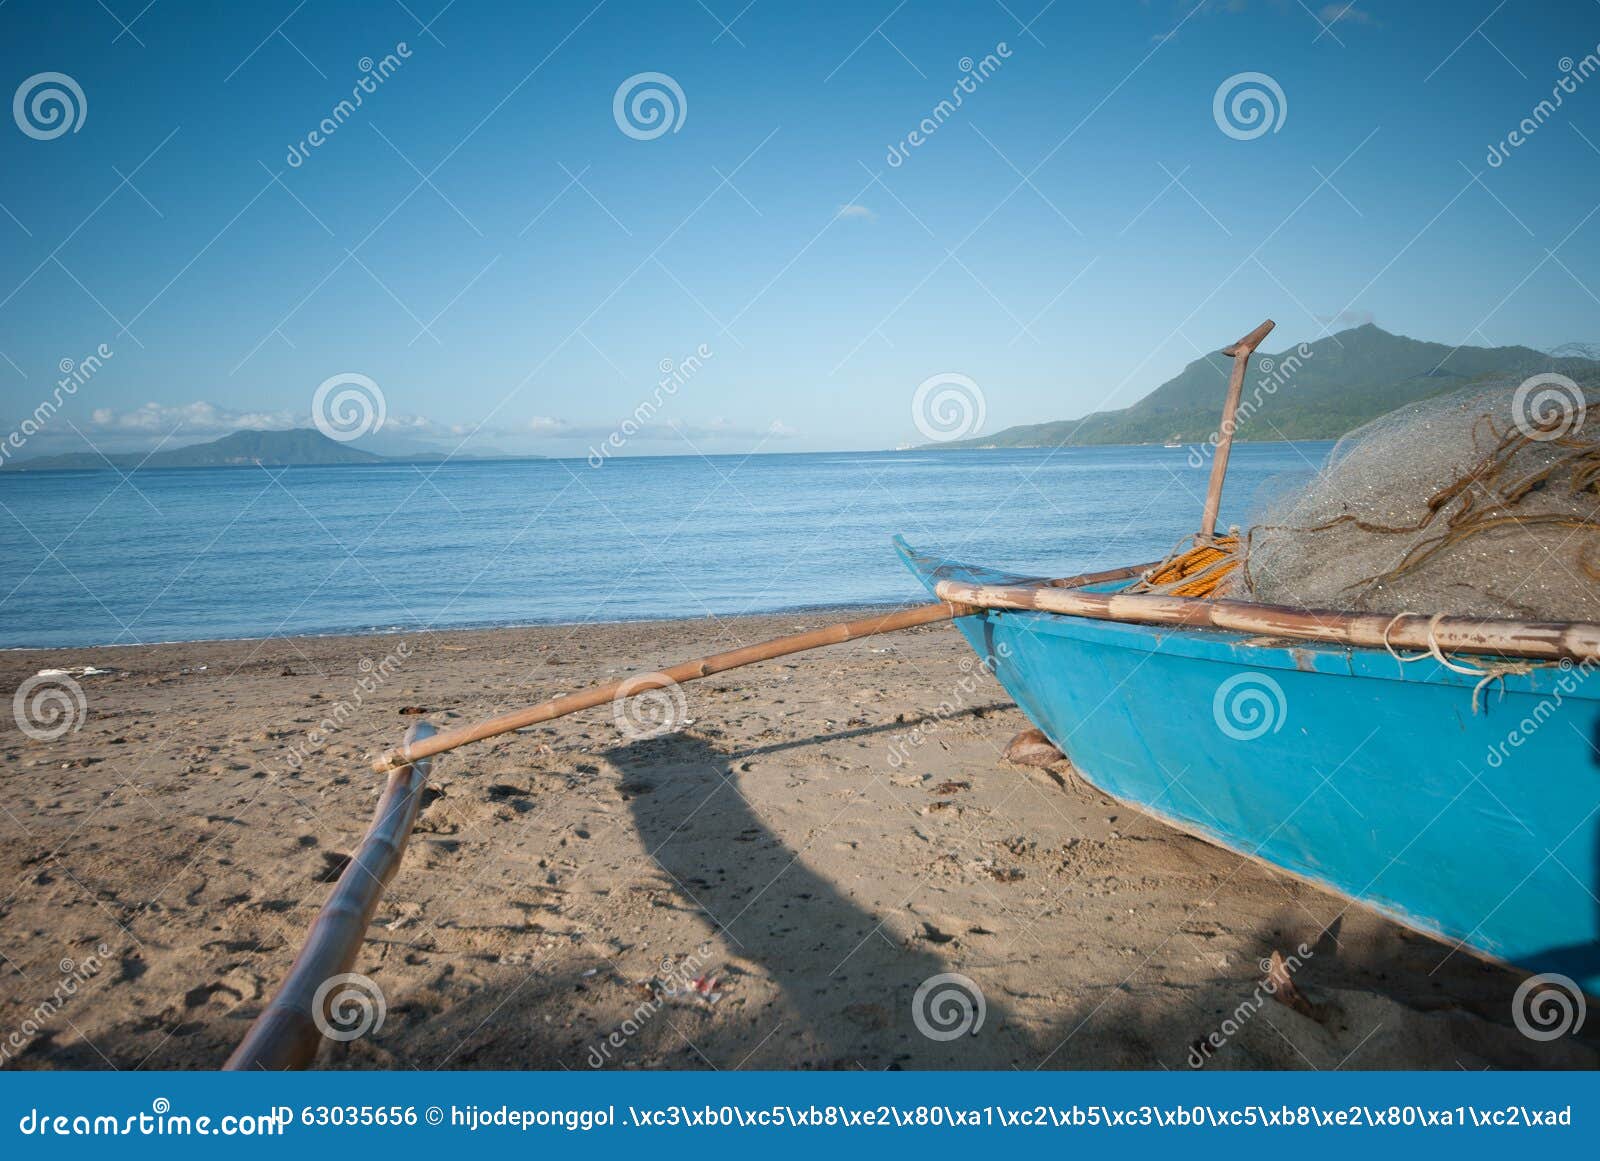 早晨海浪冲进海滩 库存照片. 图片 包括有 阳光, 蓝色, 海运, 夏天, 海岛, 火箭筒, 横向, 海岸线 - 162714880